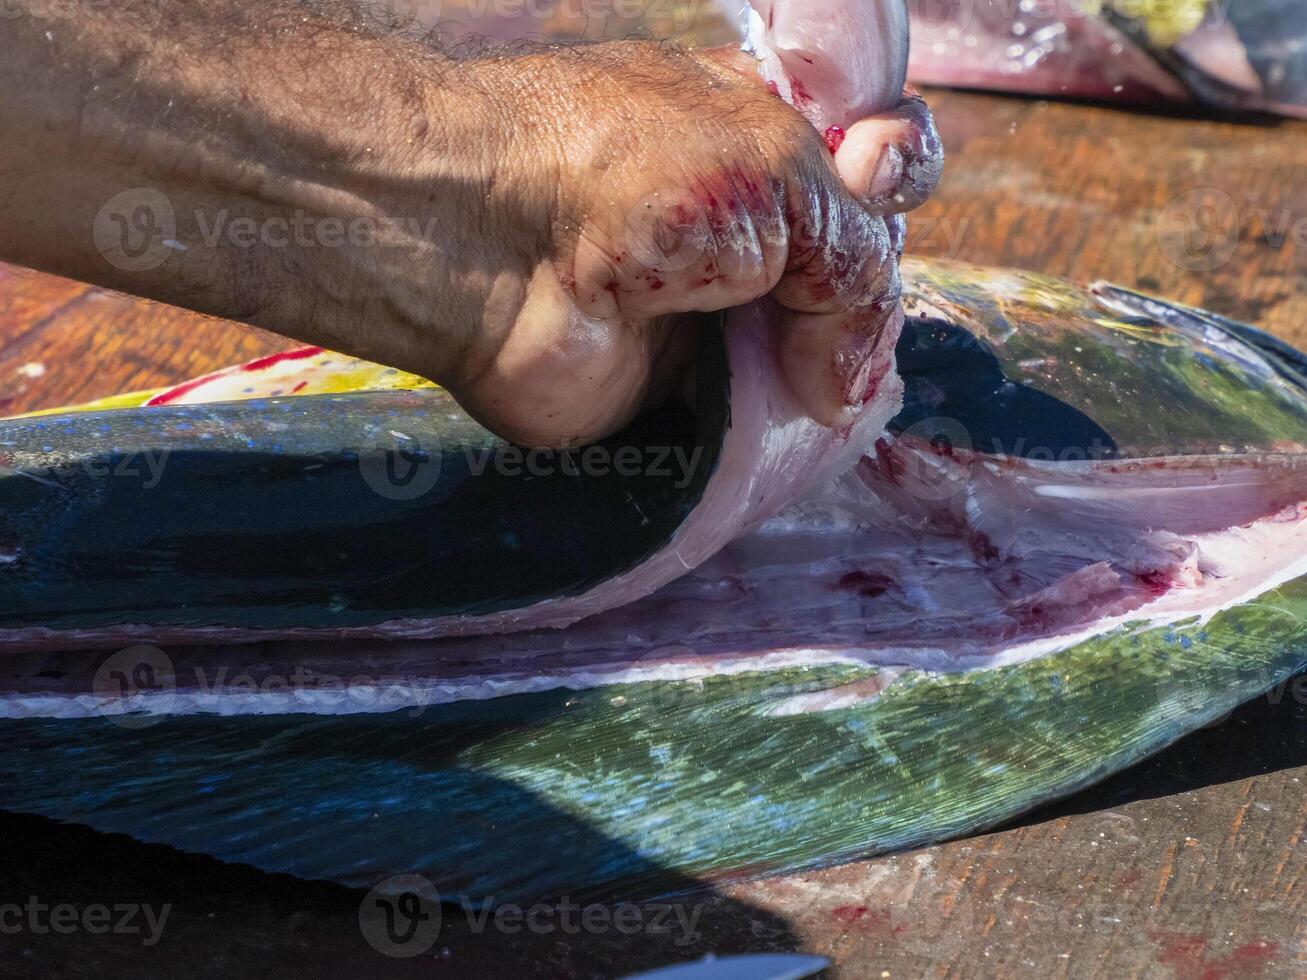 mahi mahi dorado fisk på fiskare rengöring tabell baja kalifornien sur mexico foto